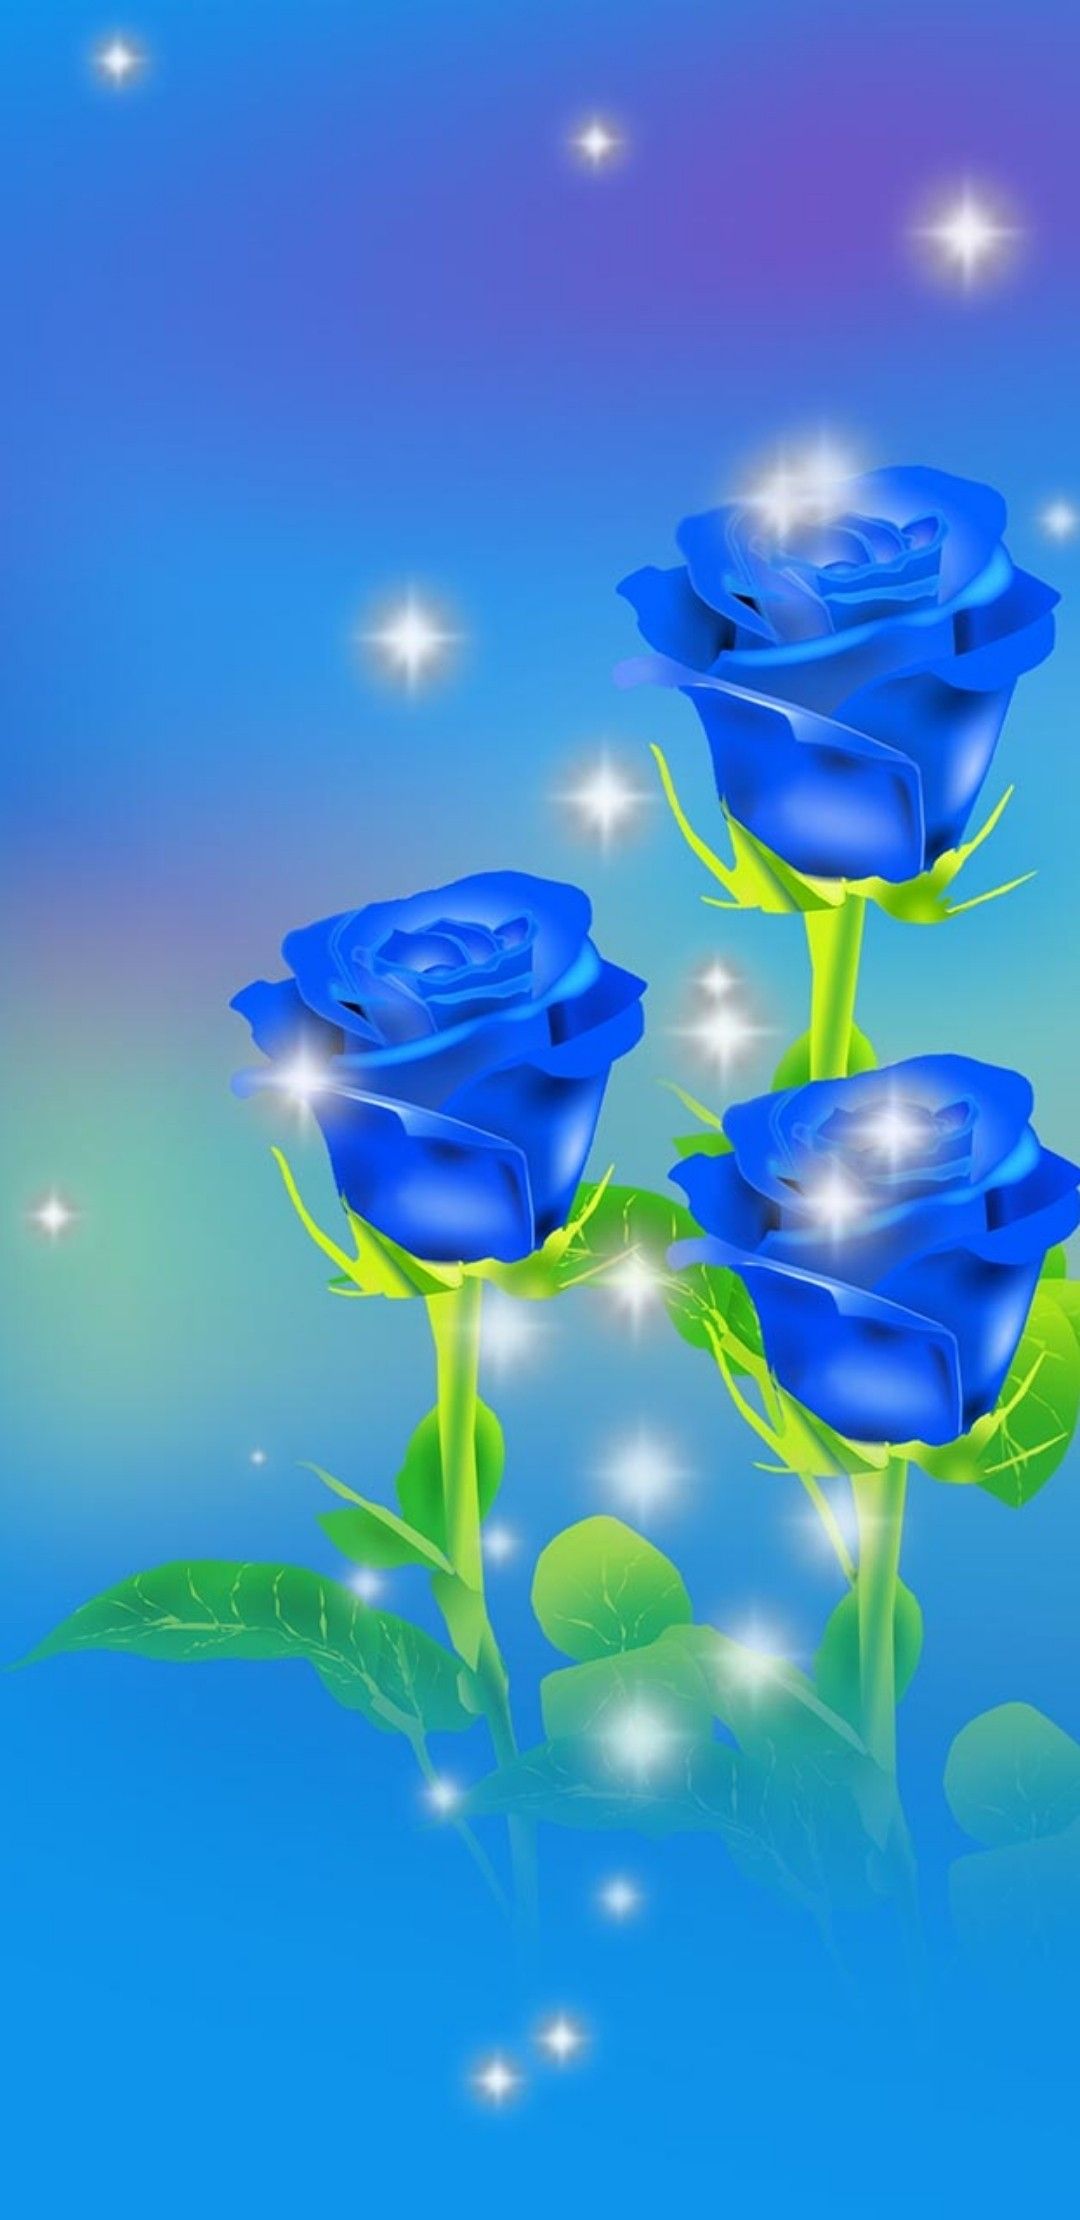 schöne bilder von rosen als tapete,blau,blaue rose,wasser,blume,rose